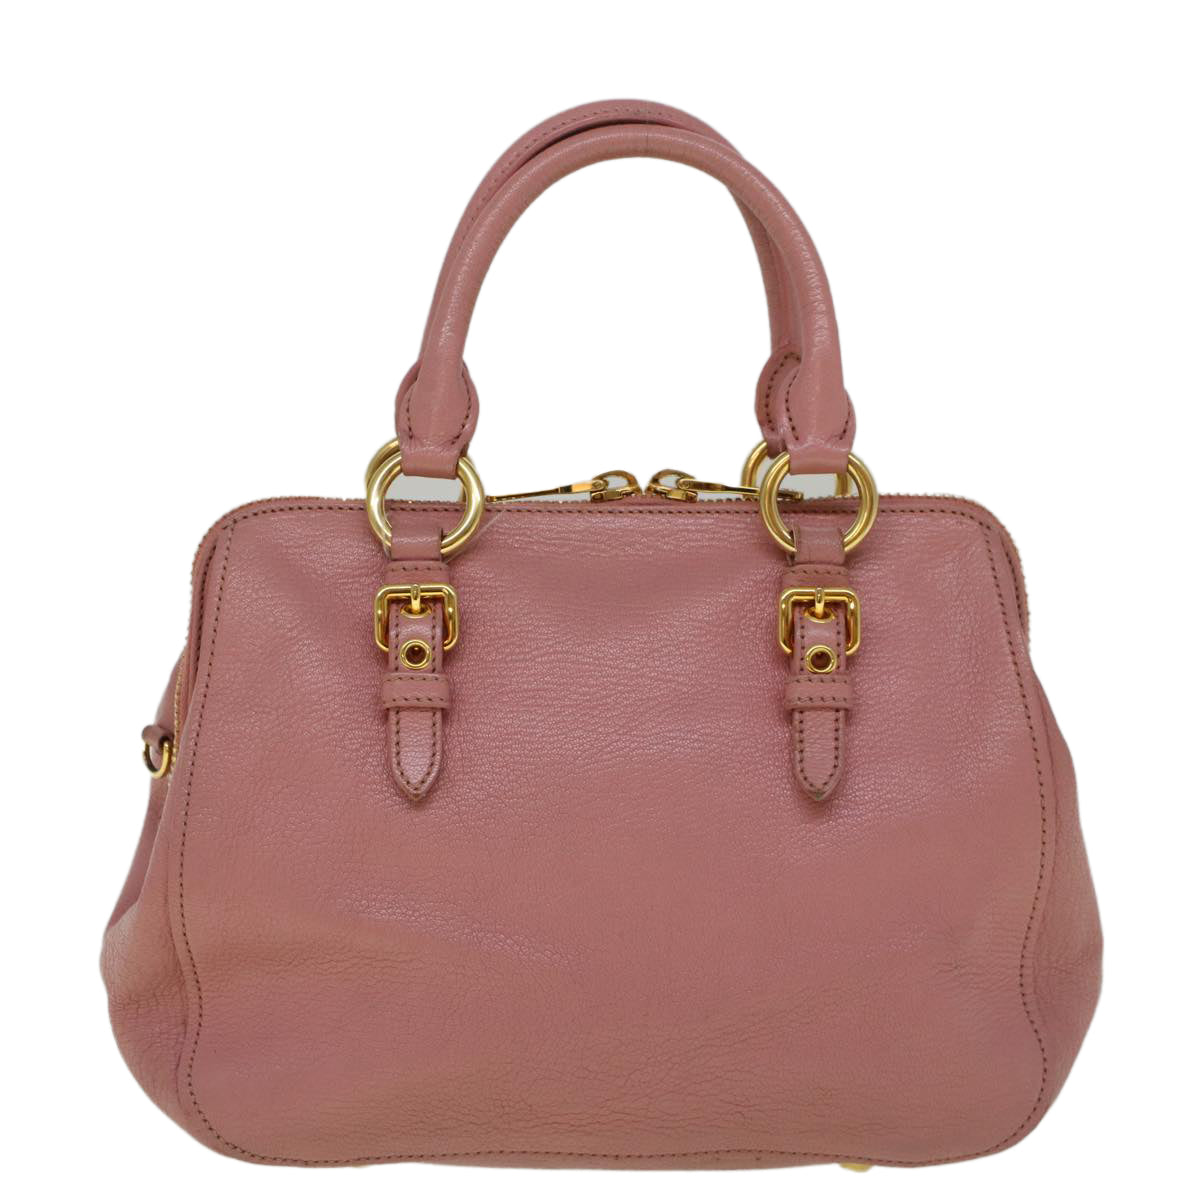 Miu Miu Hand Bag Leather 2way Pink Auth am5171 - 0